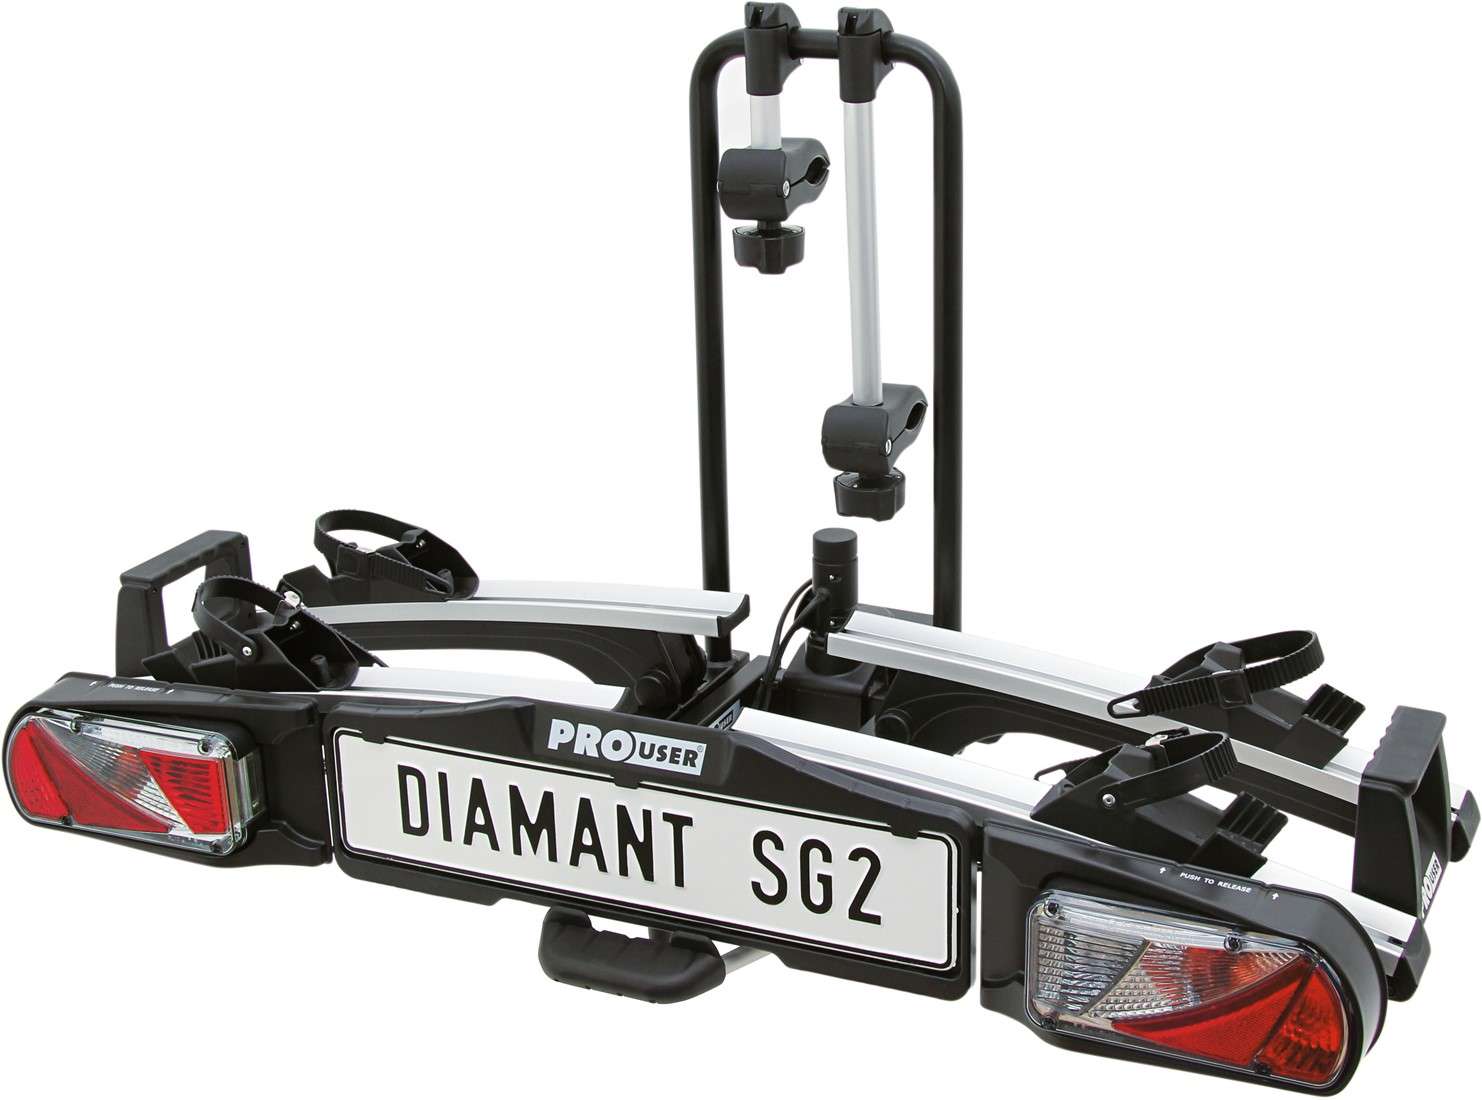 Pro User Diamant SG2 Fietsendrager voor 2 fietsen